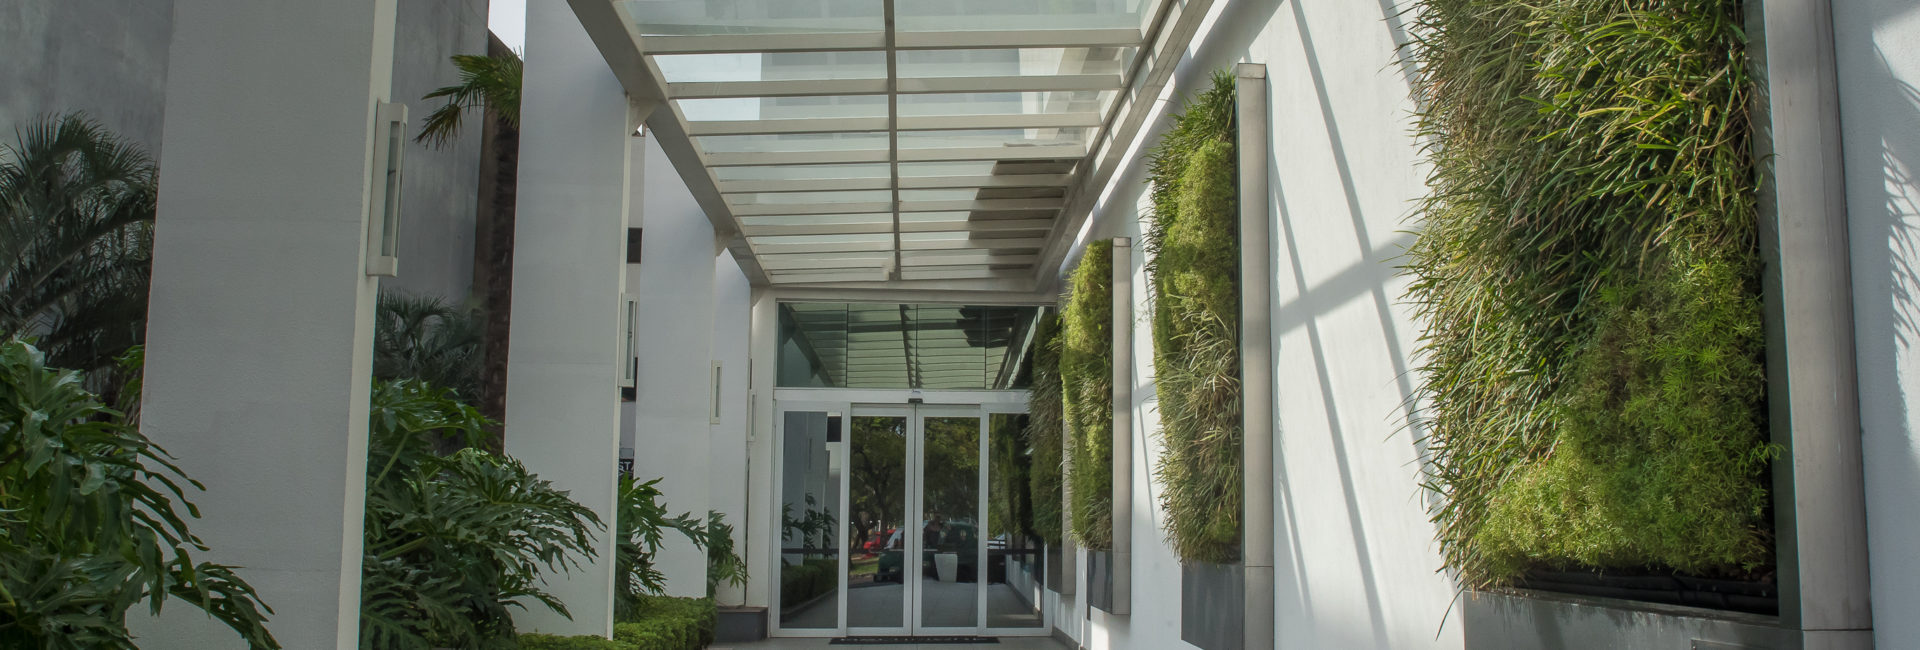 Imagem de um corredor com plantas do arquivo da Ecotelhado para simbolizar plantas para corredor externo